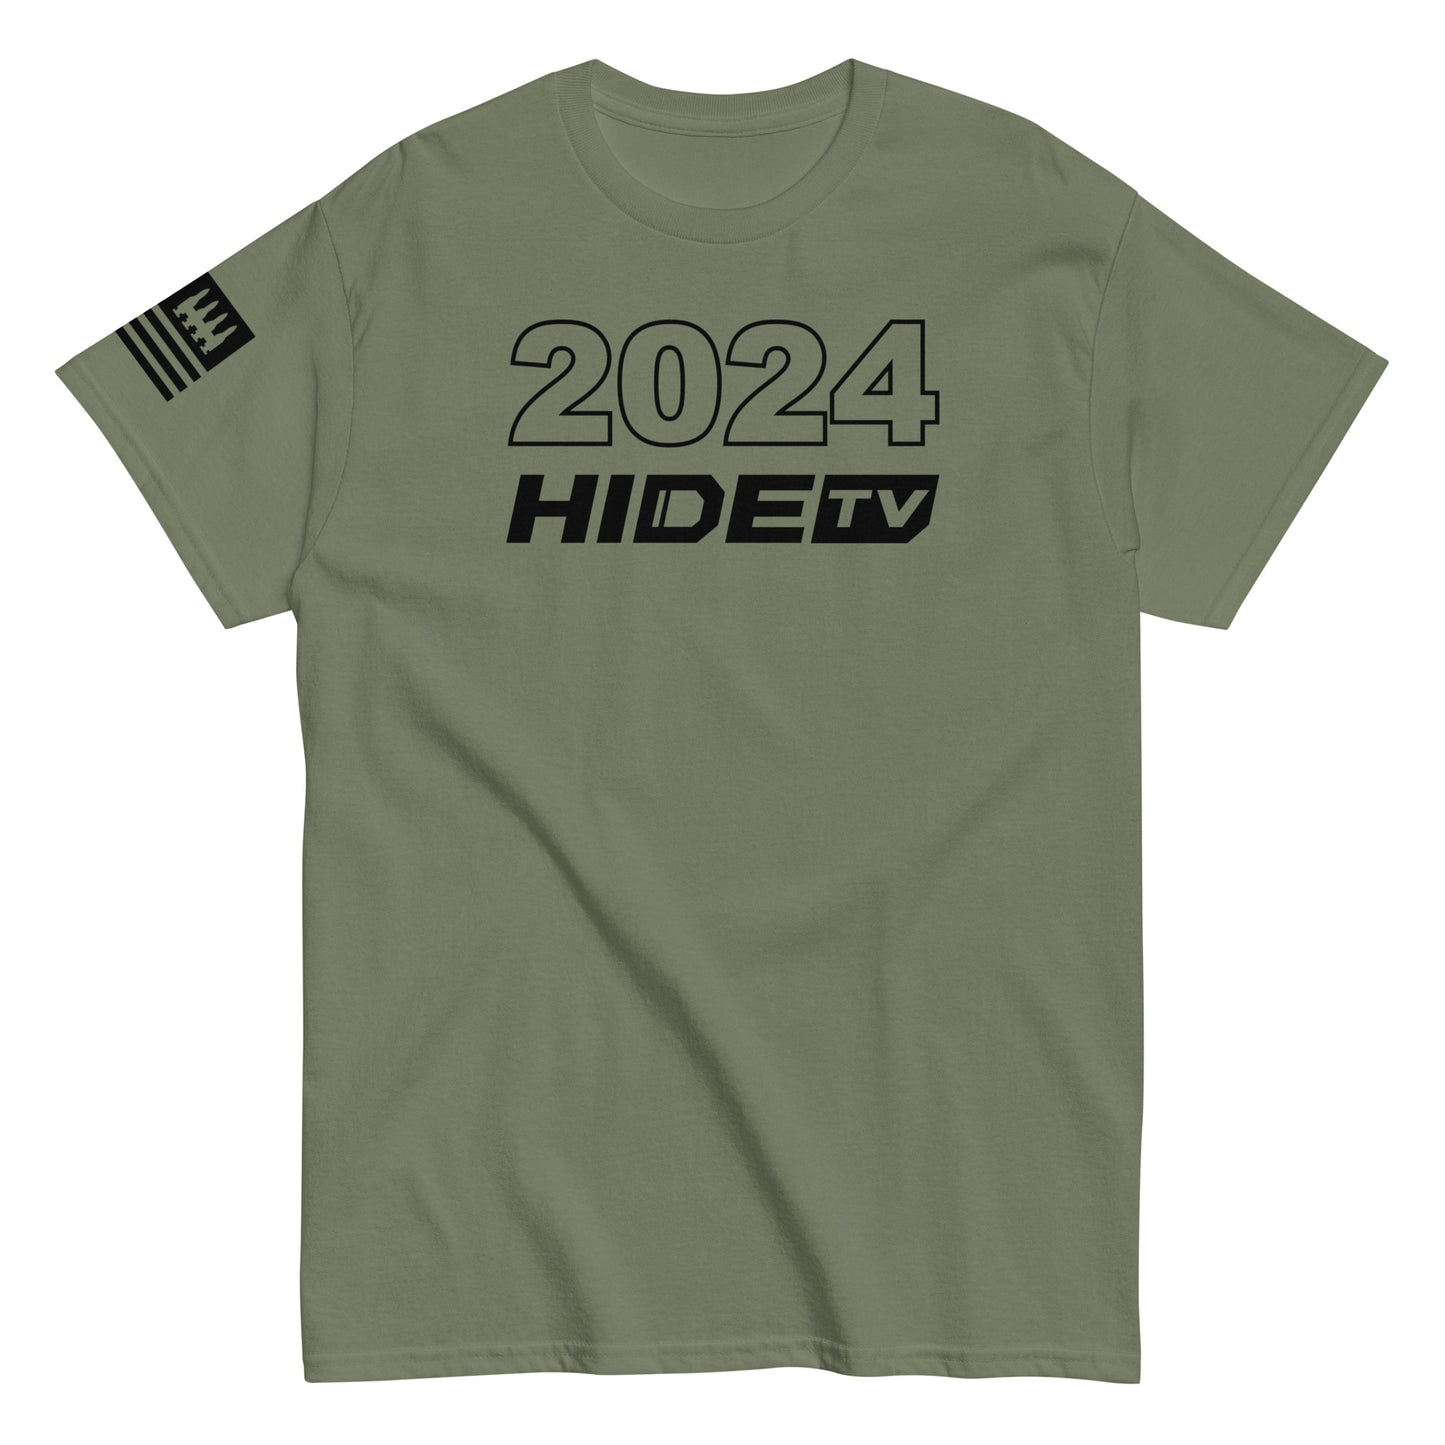 HideTV 2024 Tee